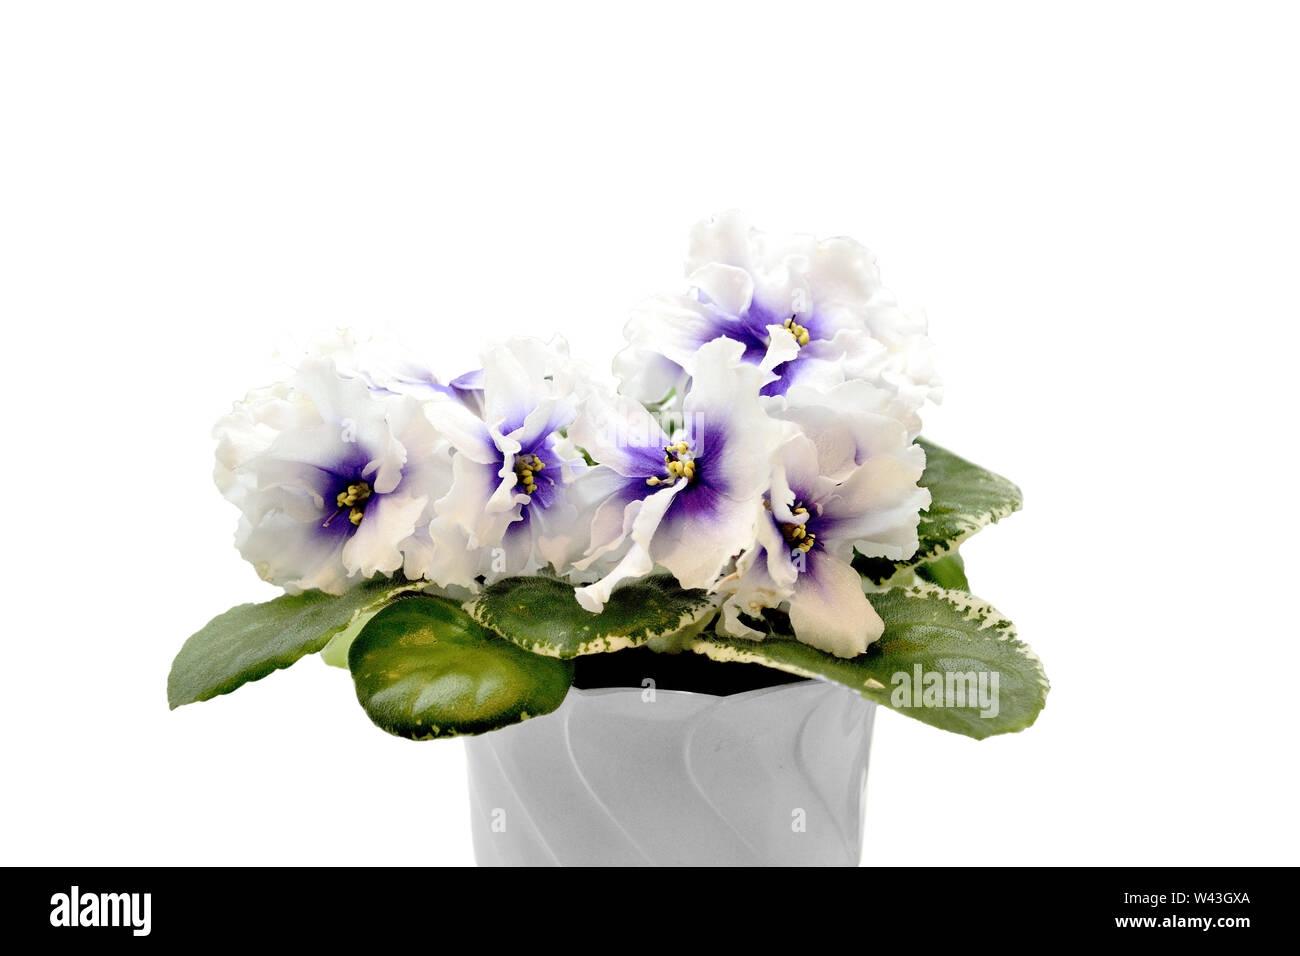 Schöne blühende Pflanze von Senpolia oder Uzumbar Violett (Saintpaulien) mit zarten lila mit weißen Blütenblättern und bunte Blätter im Topf. Dekorative Stockfoto